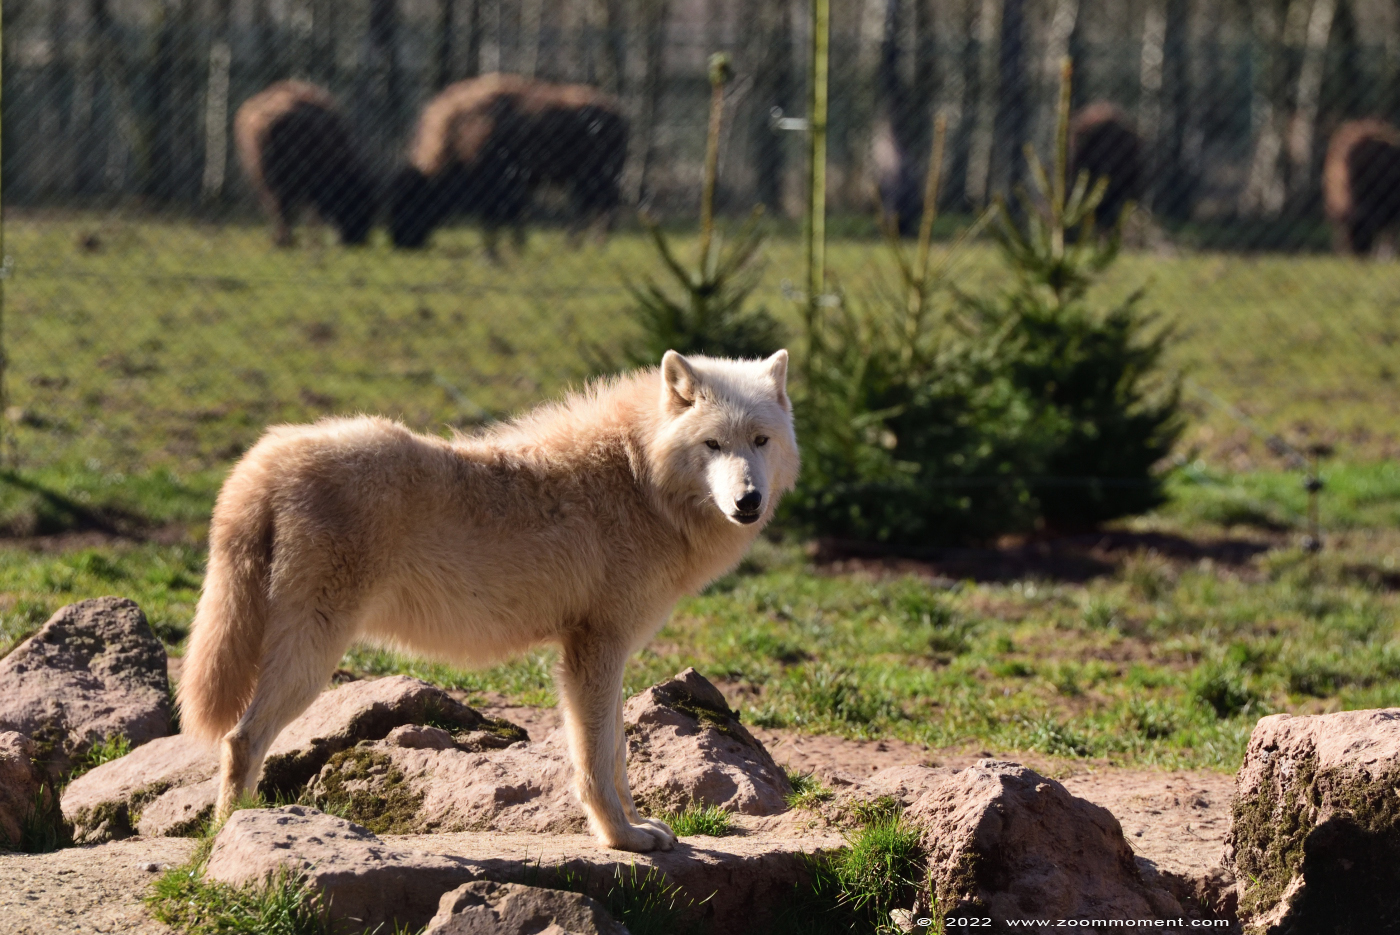 Witte wolf ( Canis lupus ) polar wolf
Trefwoorden: Monde Sauvage Belgium Witte wolf Canis lupus polar wolf